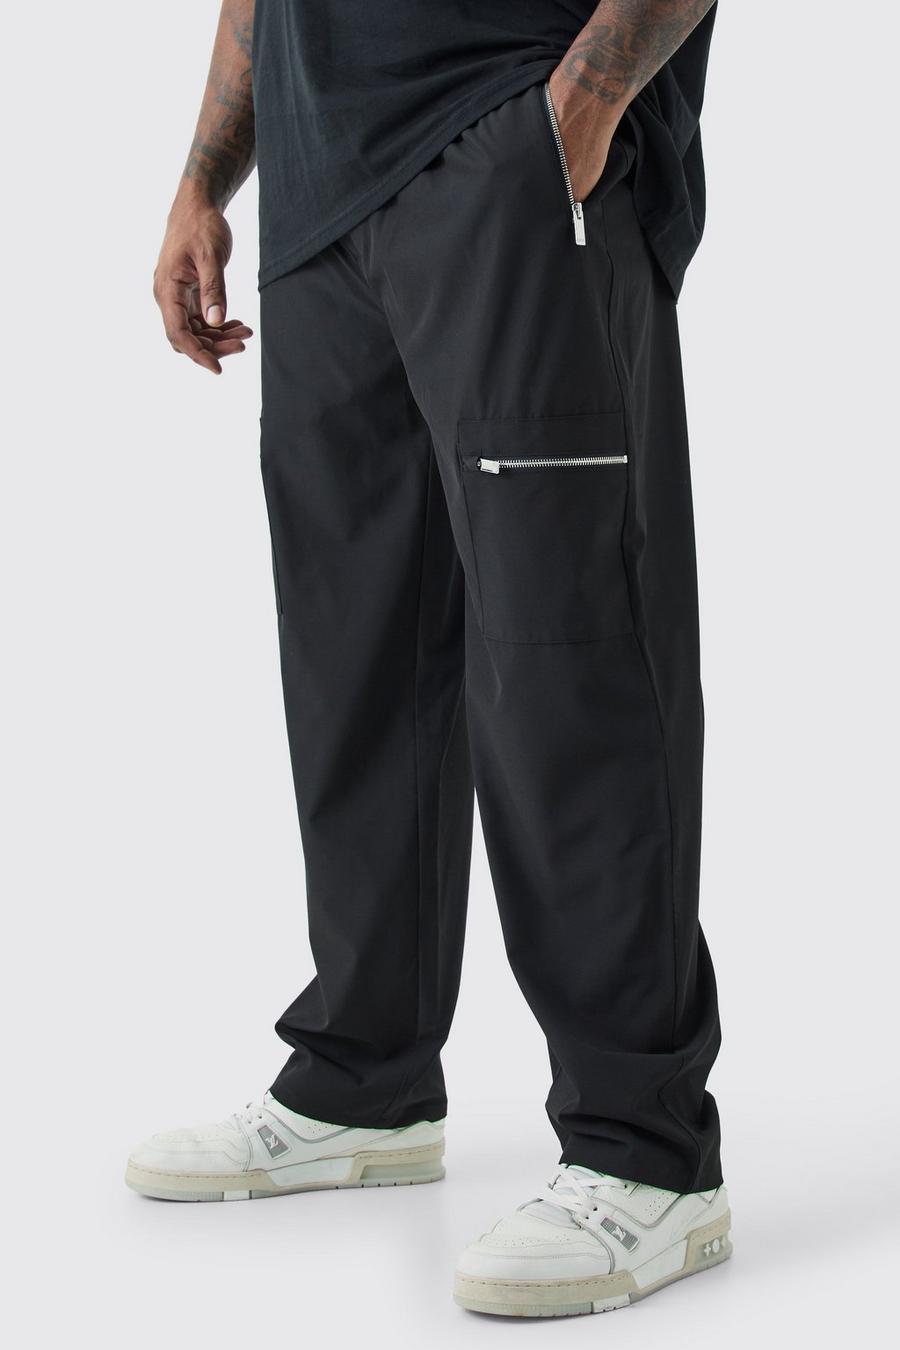 Pantalón Plus cargo utilitario elástico técnico con cintura elástica, Black